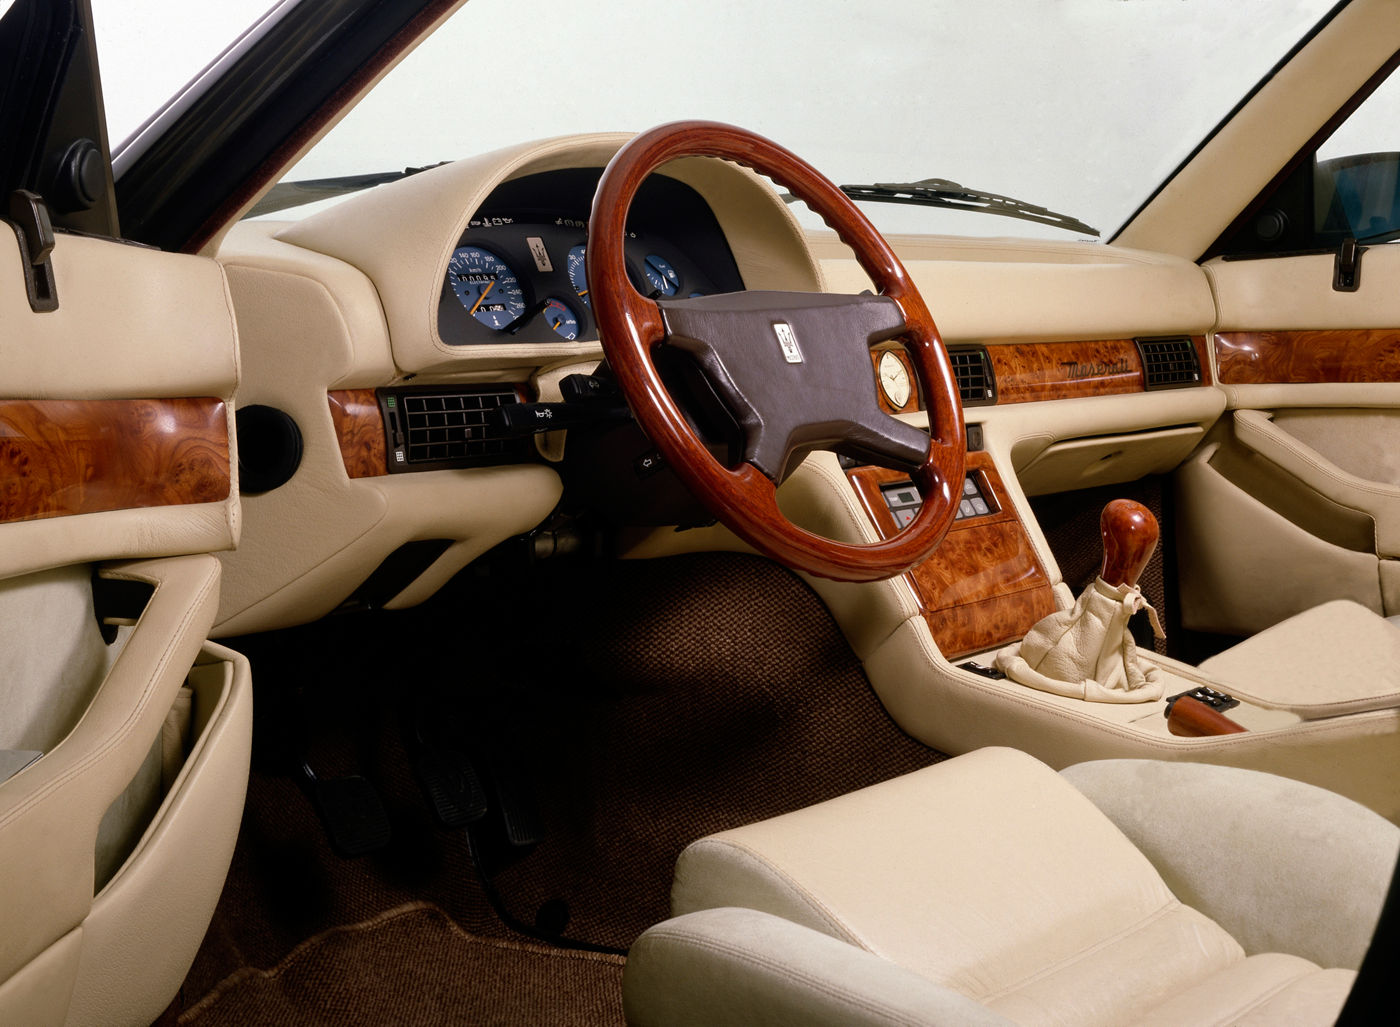 1987 Maserati 430 - interior view of the classic car model